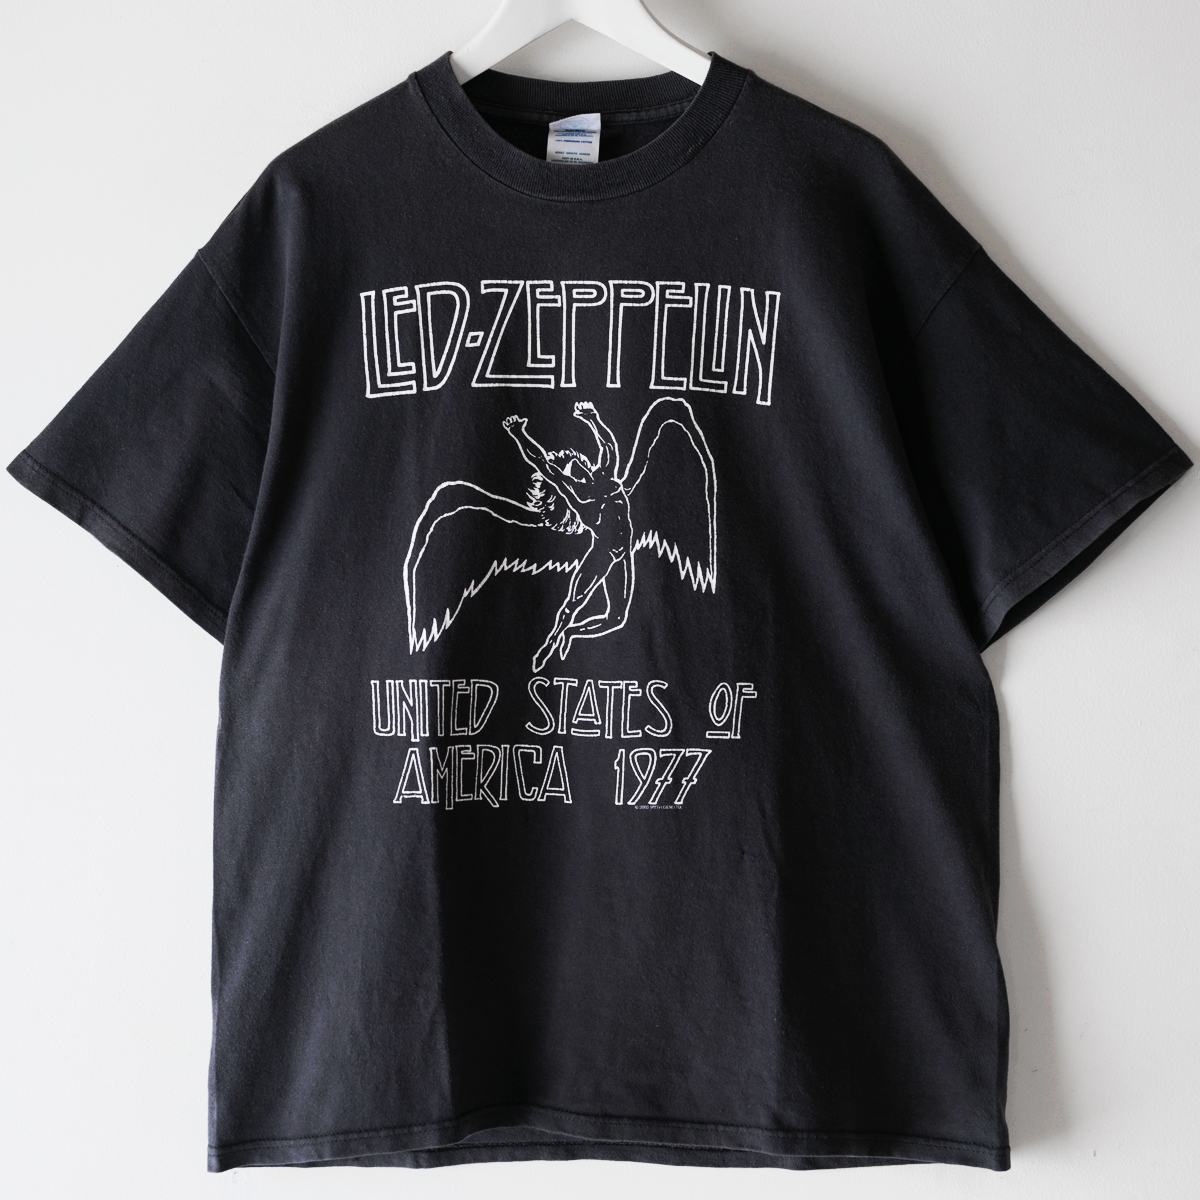 00s LED ZEPPELIN U.S. TOUR 1977 レッド・ツェッペリン Tシャツ USA製 ブラック サイズL / ヴィンテージ バンドT ロックT USA アメカジ_画像1